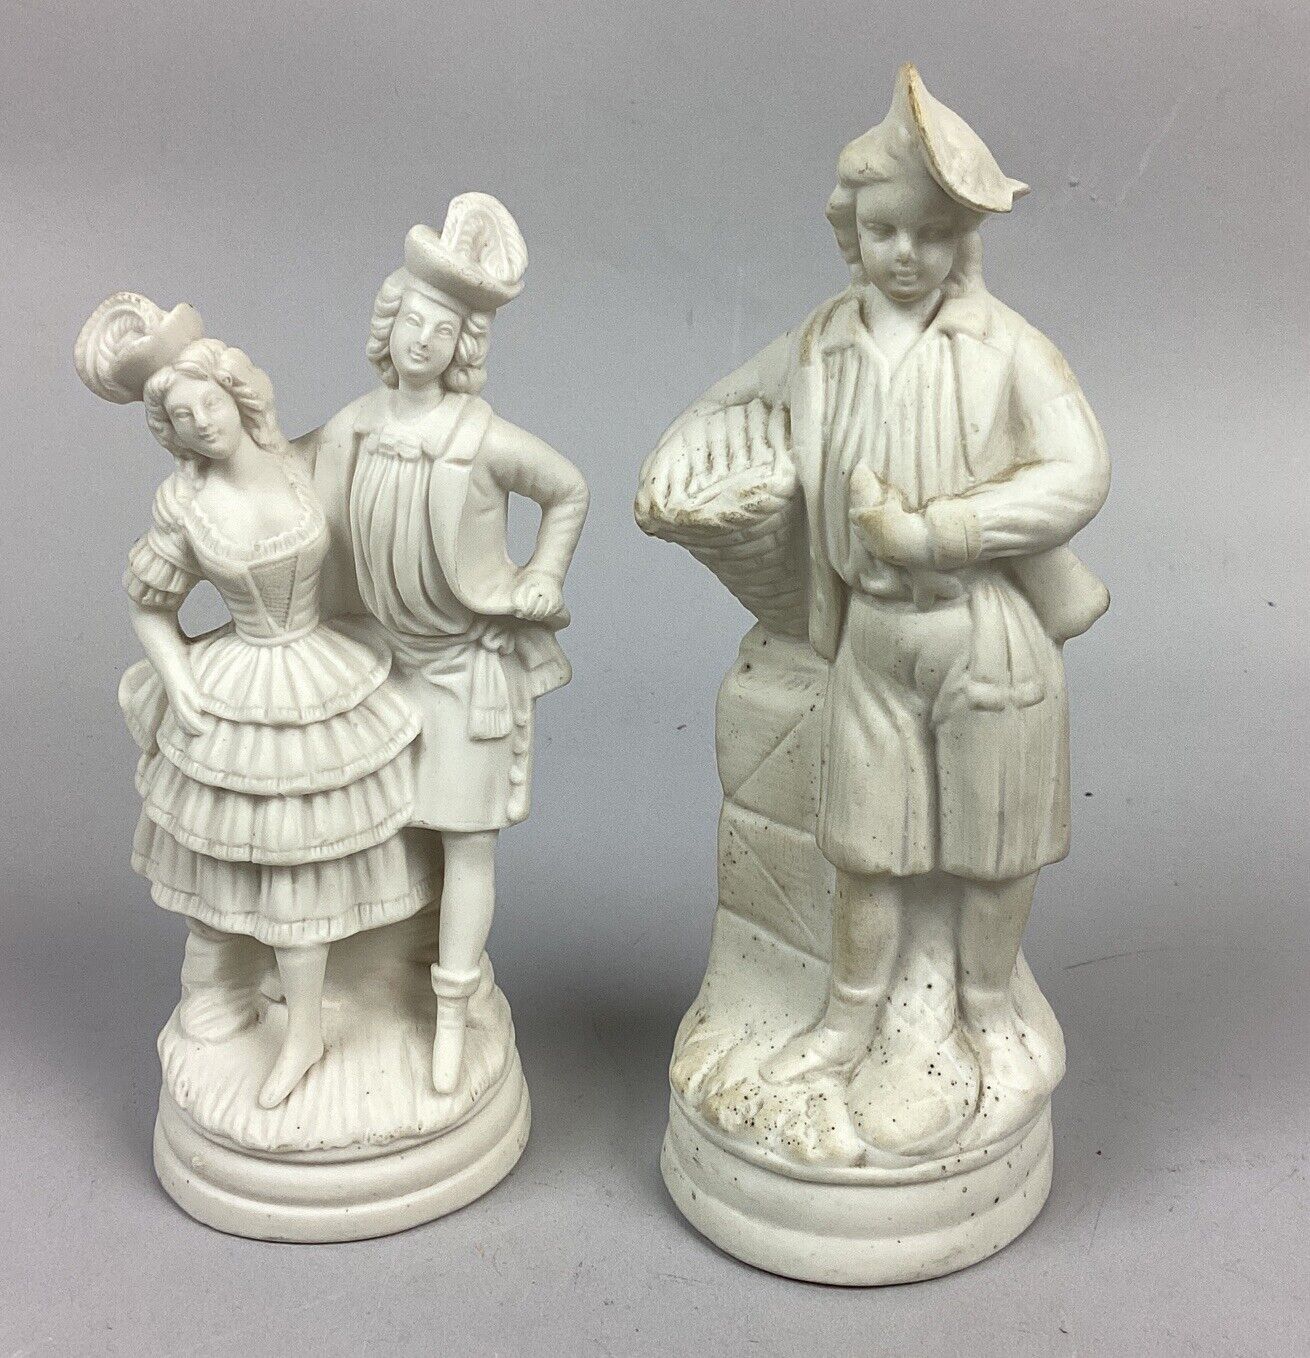 2 Antique Bisque Porcelain Figurines